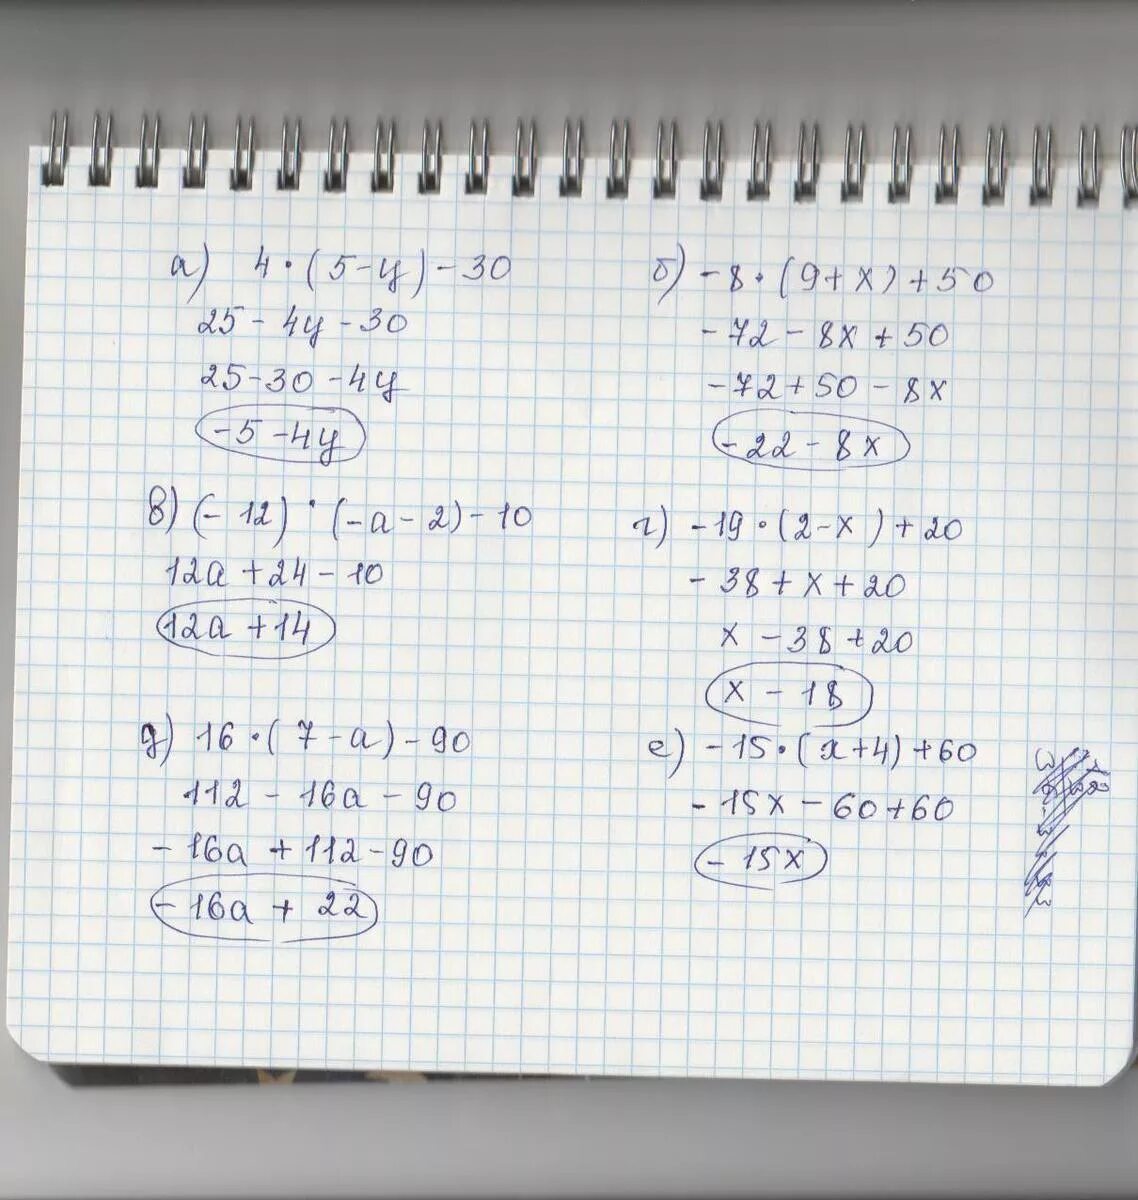 3 х 9 45. 20-3(Х-5)<16-7х. 5/4-Х+5/Х=10/5. Решение 5х+12=60. 4нвк 60-12-19.